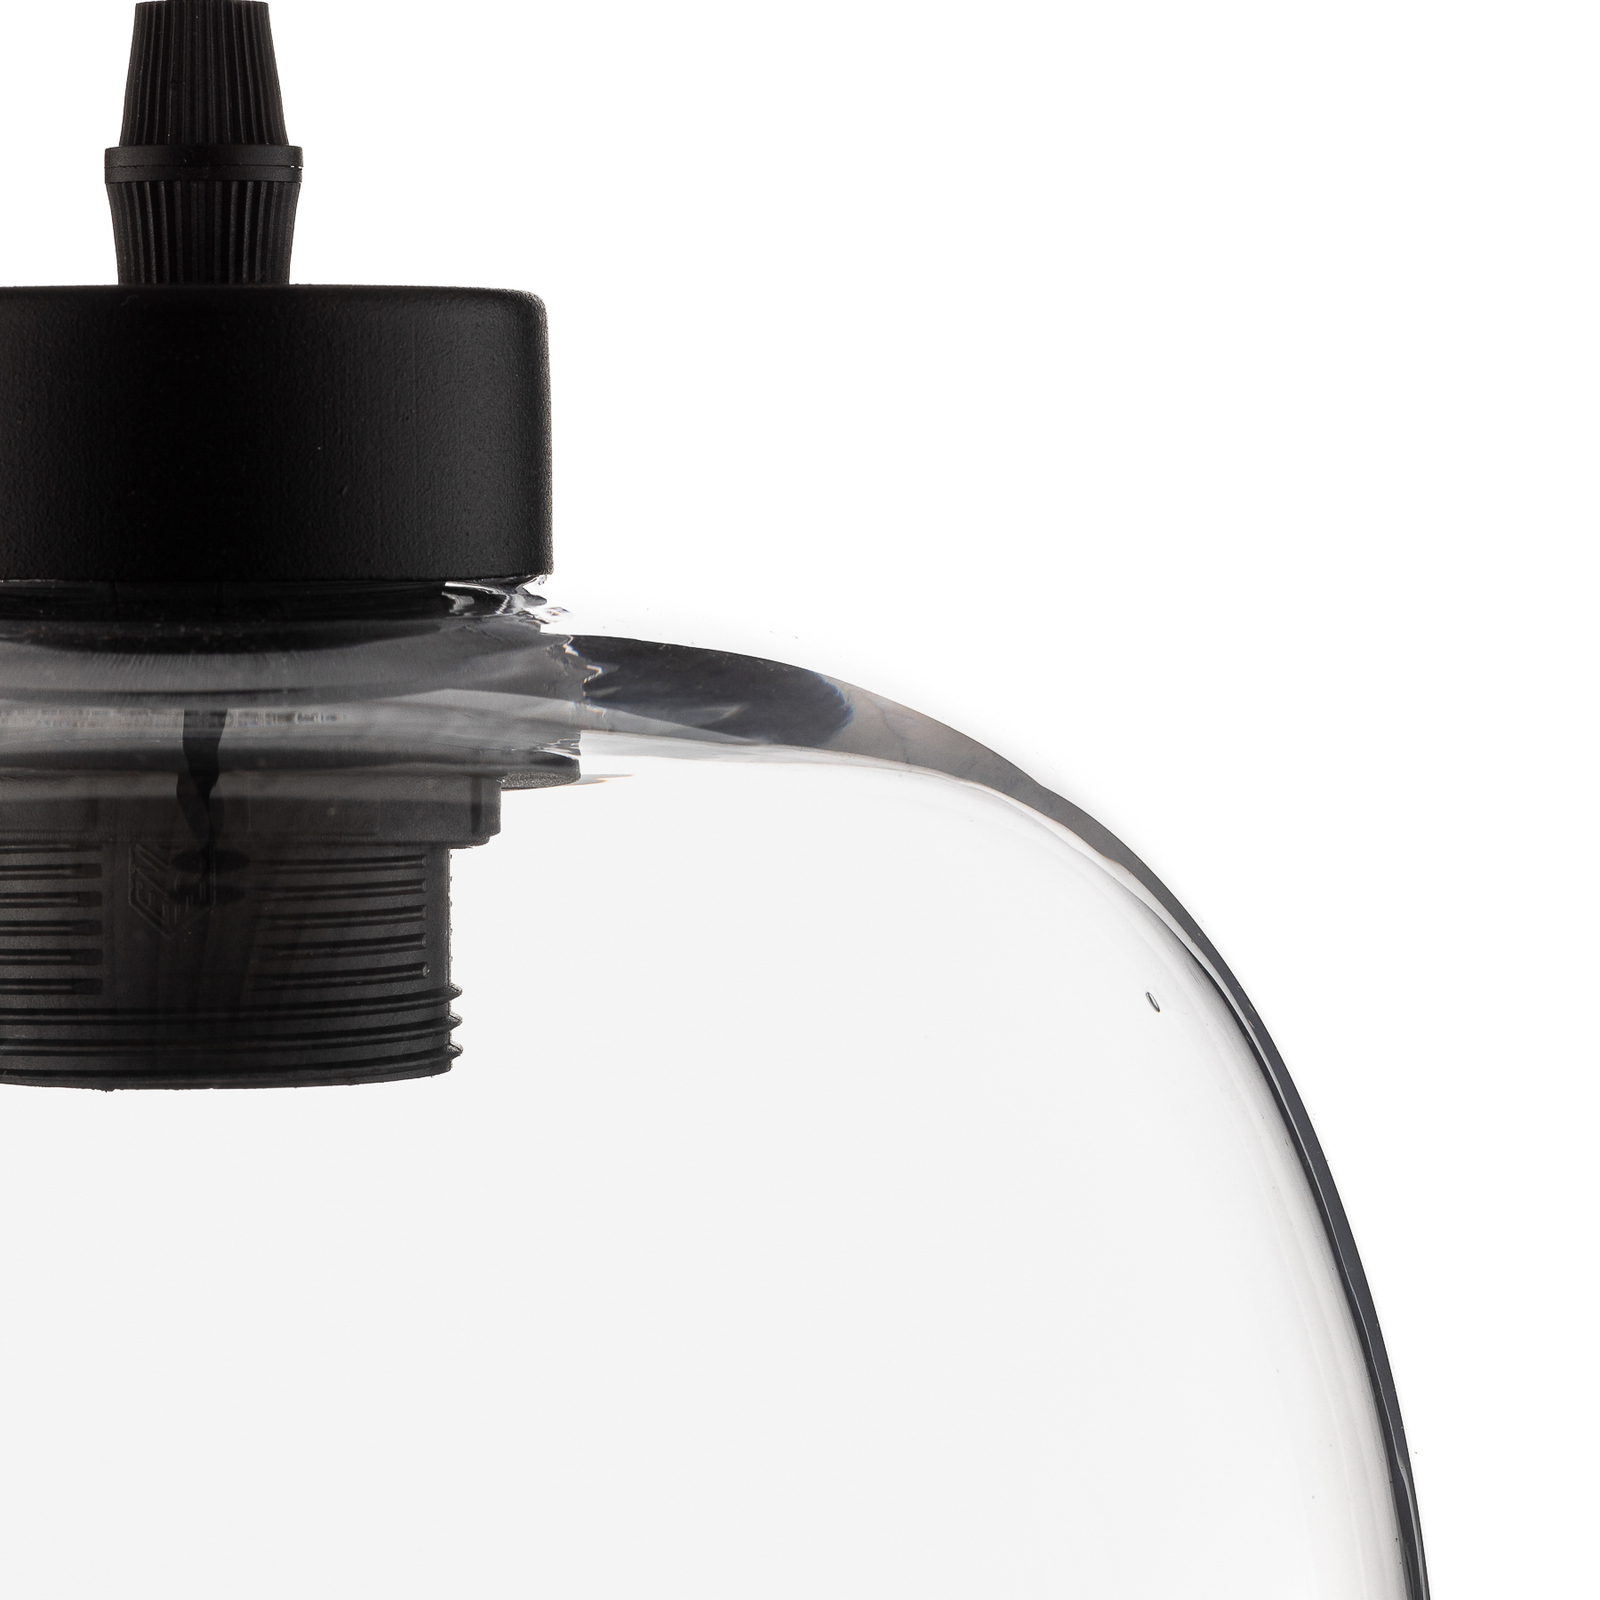 Hanglamp Elio, glas, transparant, 1-lamp